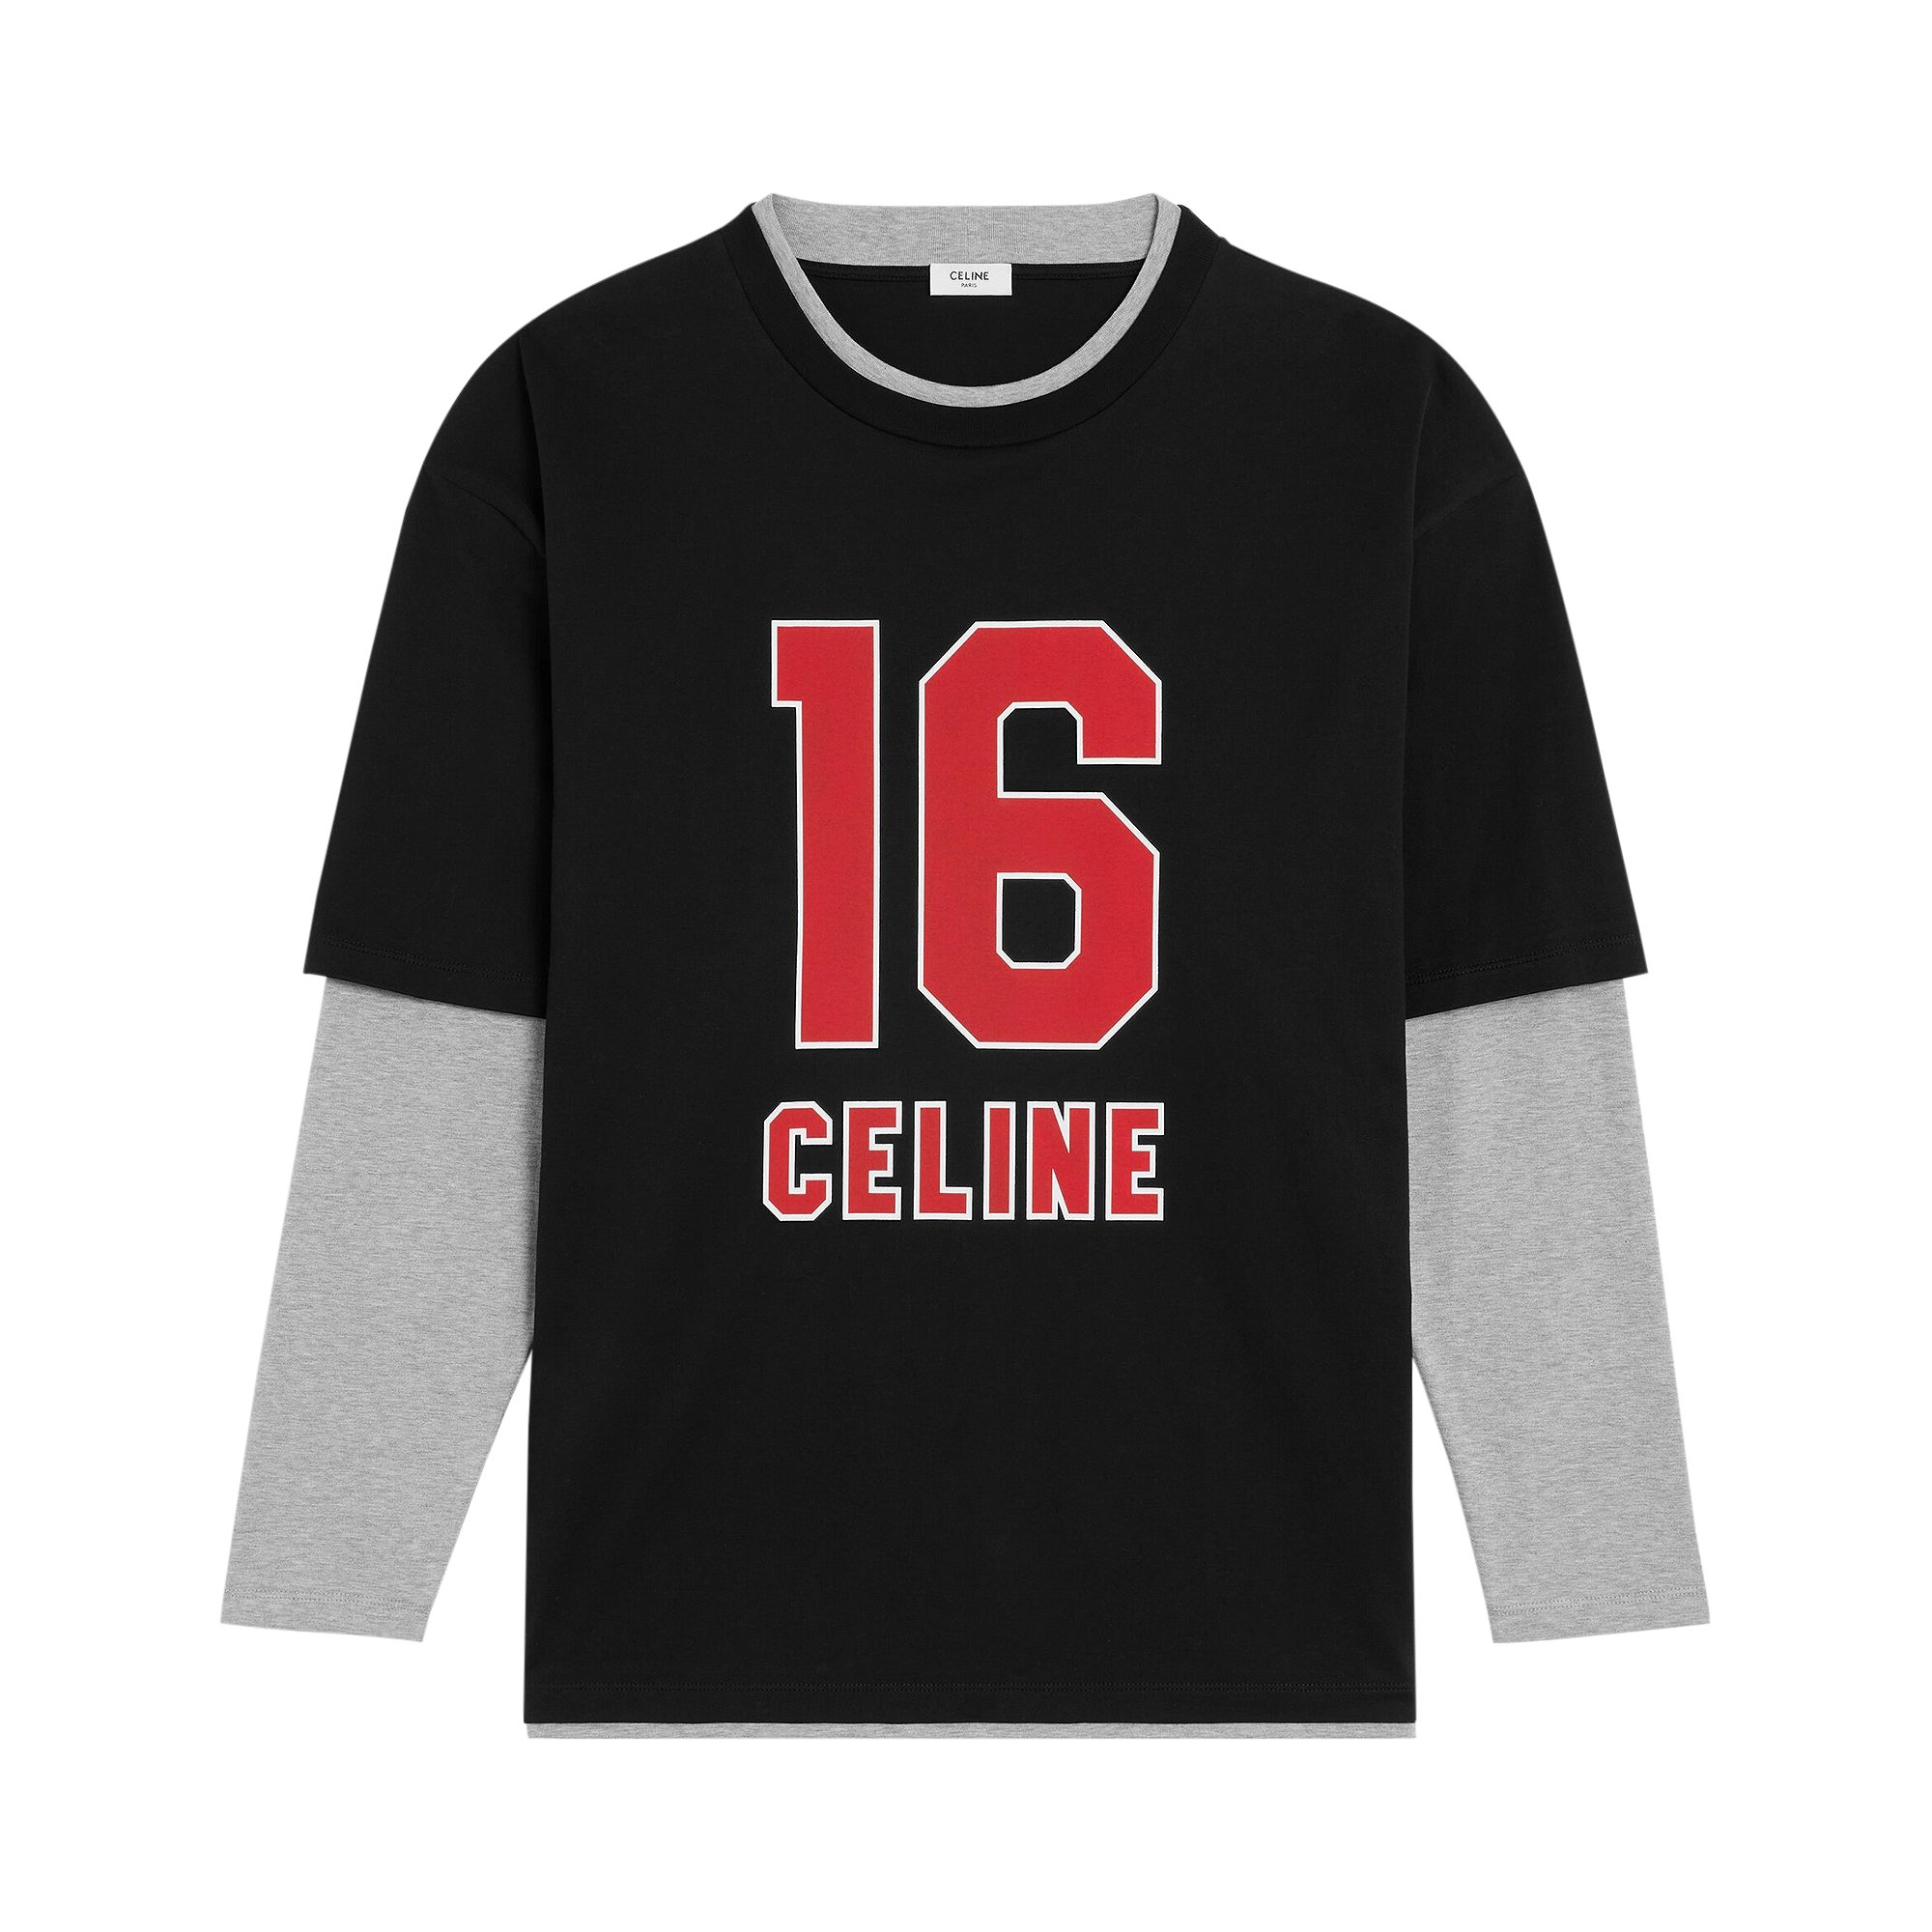 Buy CELINE 16 Skater T-Shirt 'Black/Gey/Red' - 2X87E671Q 38RZ 